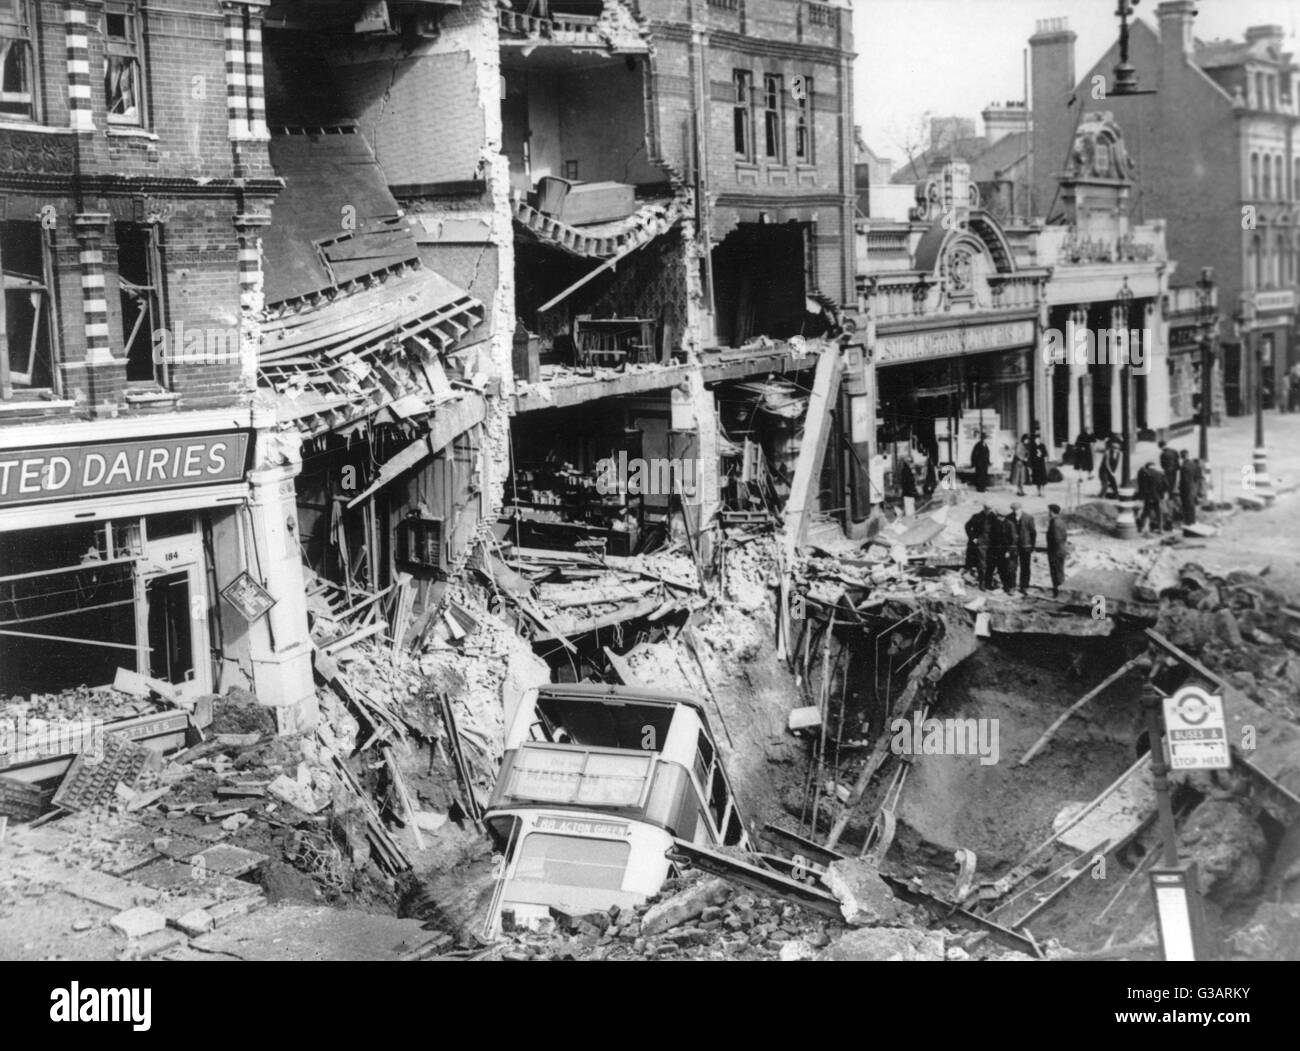 Blitz à Londres -- suite de bombardements, avec une rangée de bâtiments en ruine, et un itinéraire de bus 88 pour Acton vert dans un grand cratère sur la route. Date : 1940 Banque D'Images